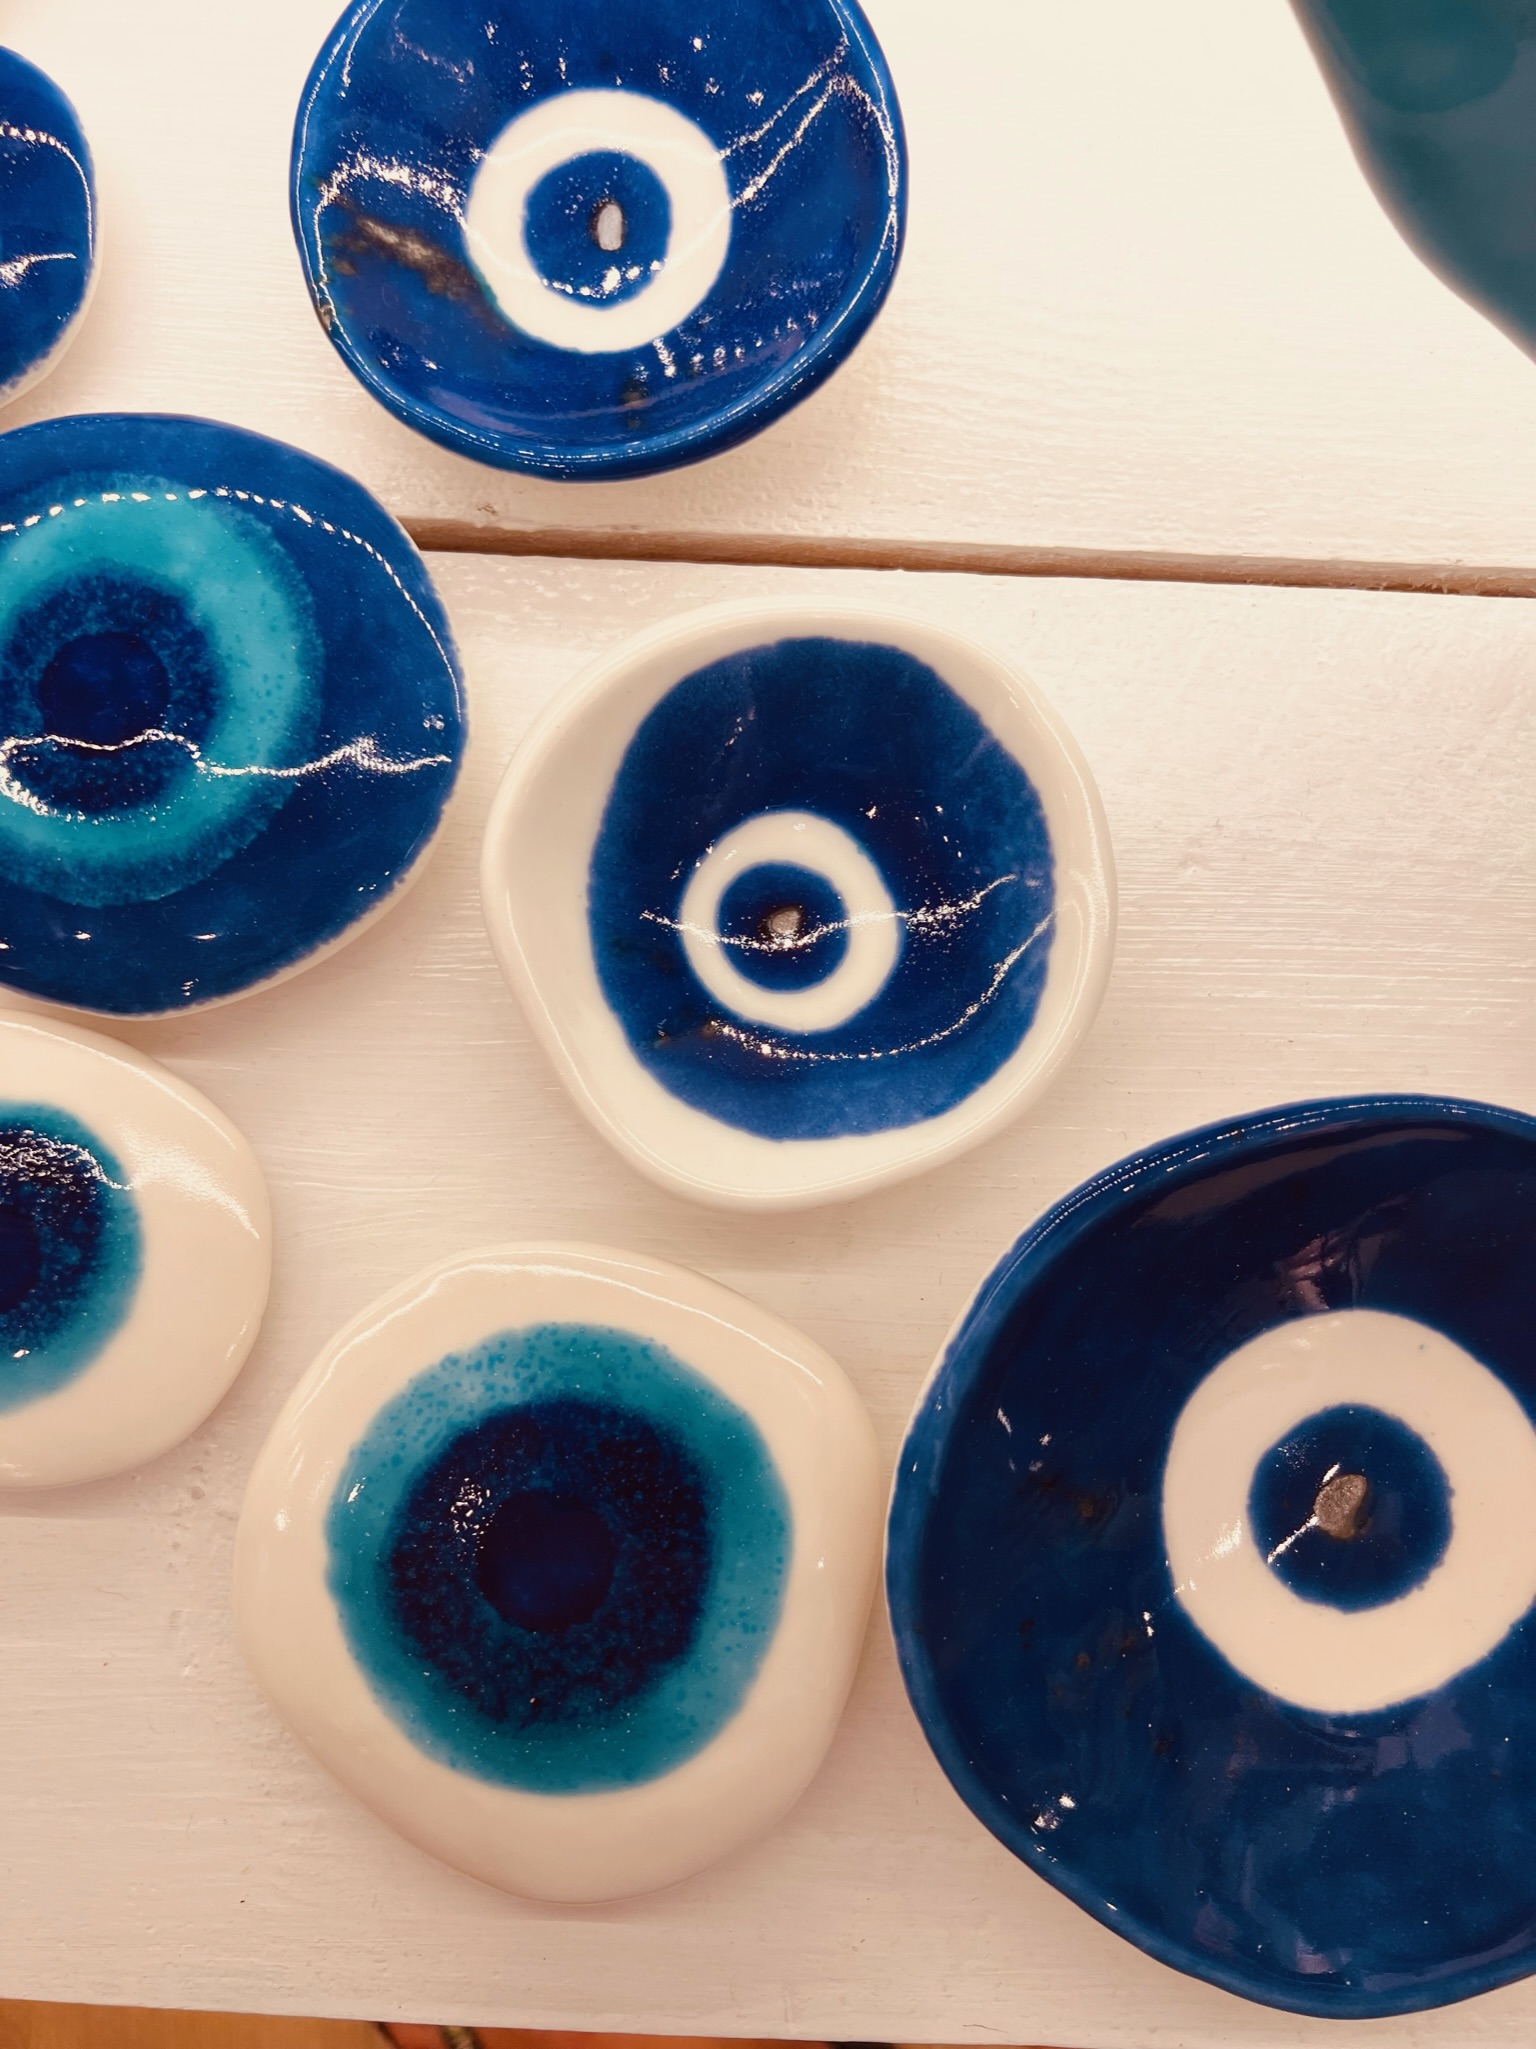 Blue ceramic bowls